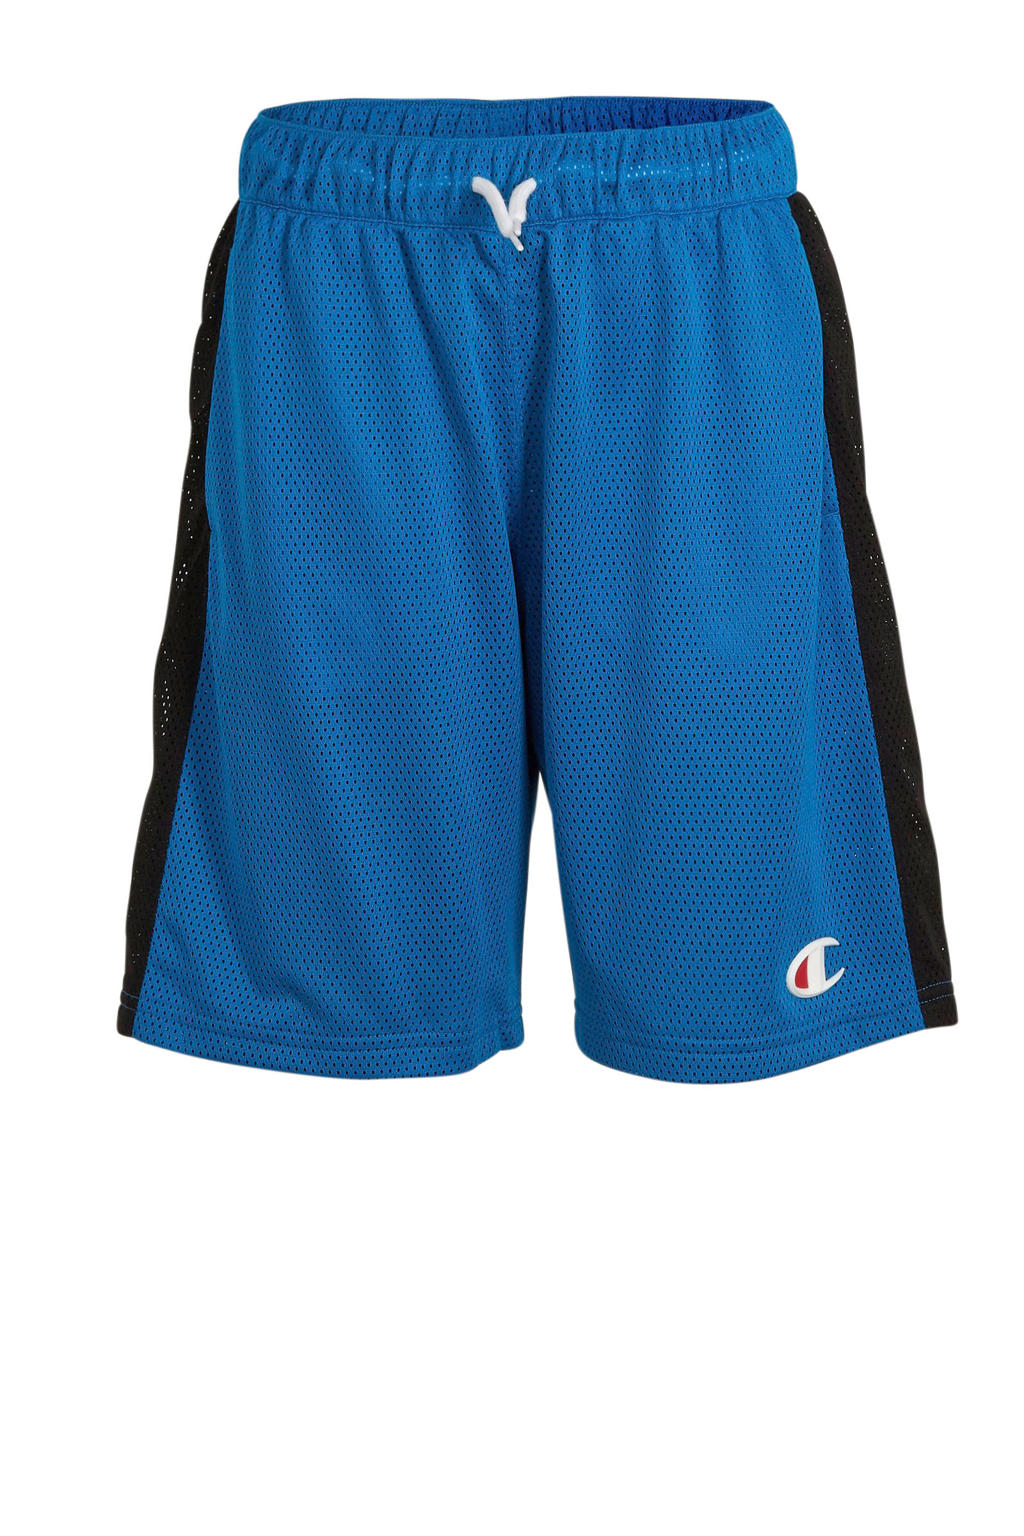 Blauw en zwarte jongens Champion short van polyester met elastische tailleband met koord en logo dessin